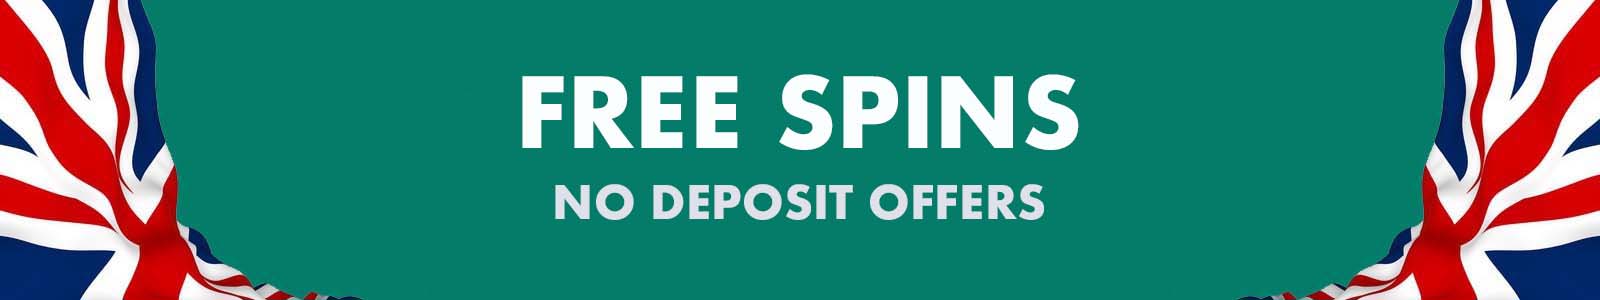 casino online uk free spins no deposit